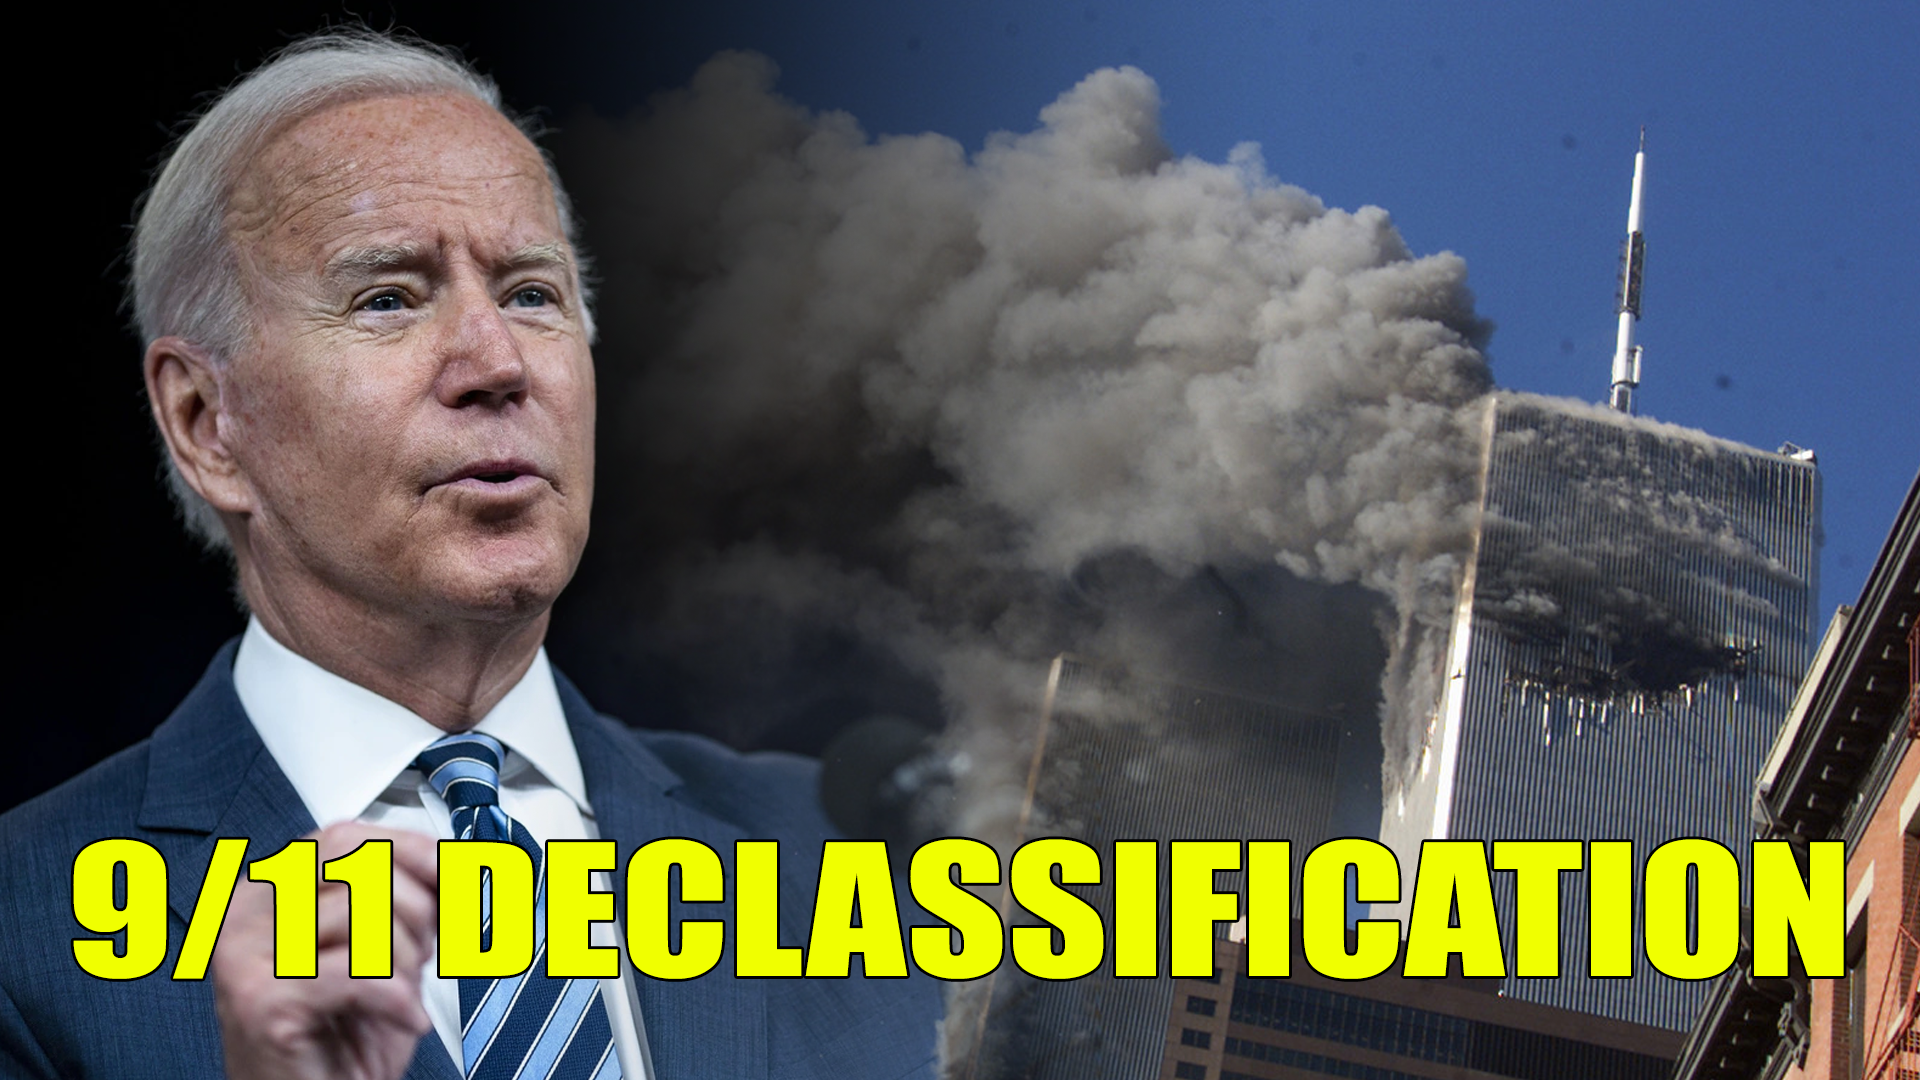 Biden authorizes release of declassified 9/11 documents